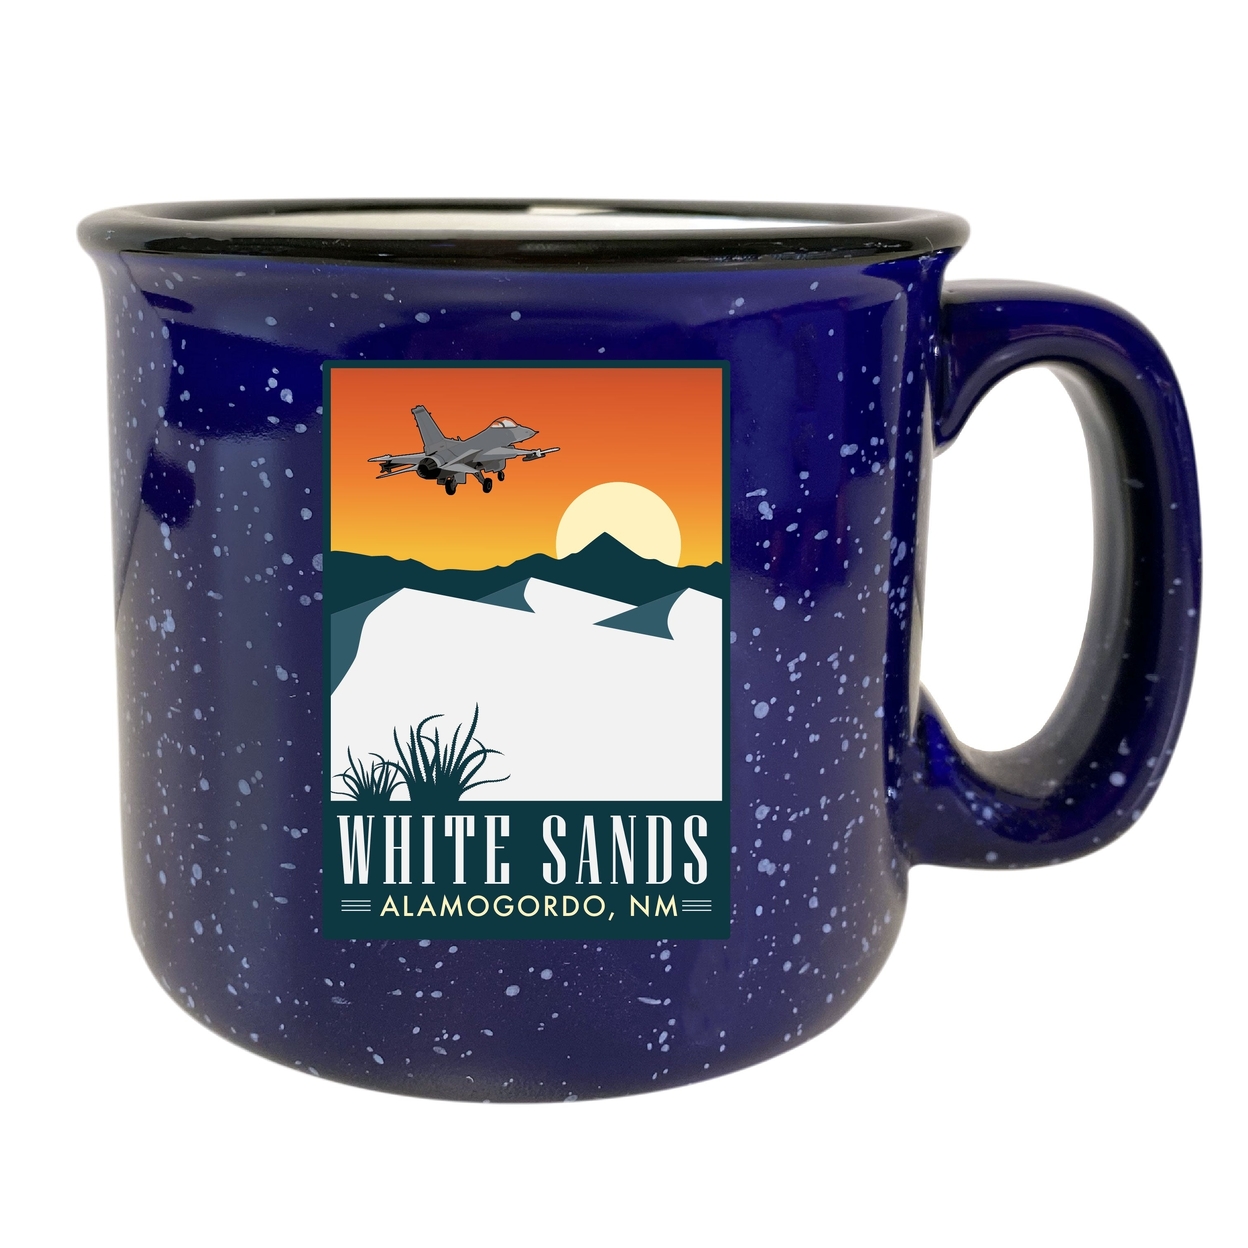 White Sands Alamogordo New Mexico 16 Oz Navy Speckled Ceramic Camper Coffee Mug Choice Of Design - Design C